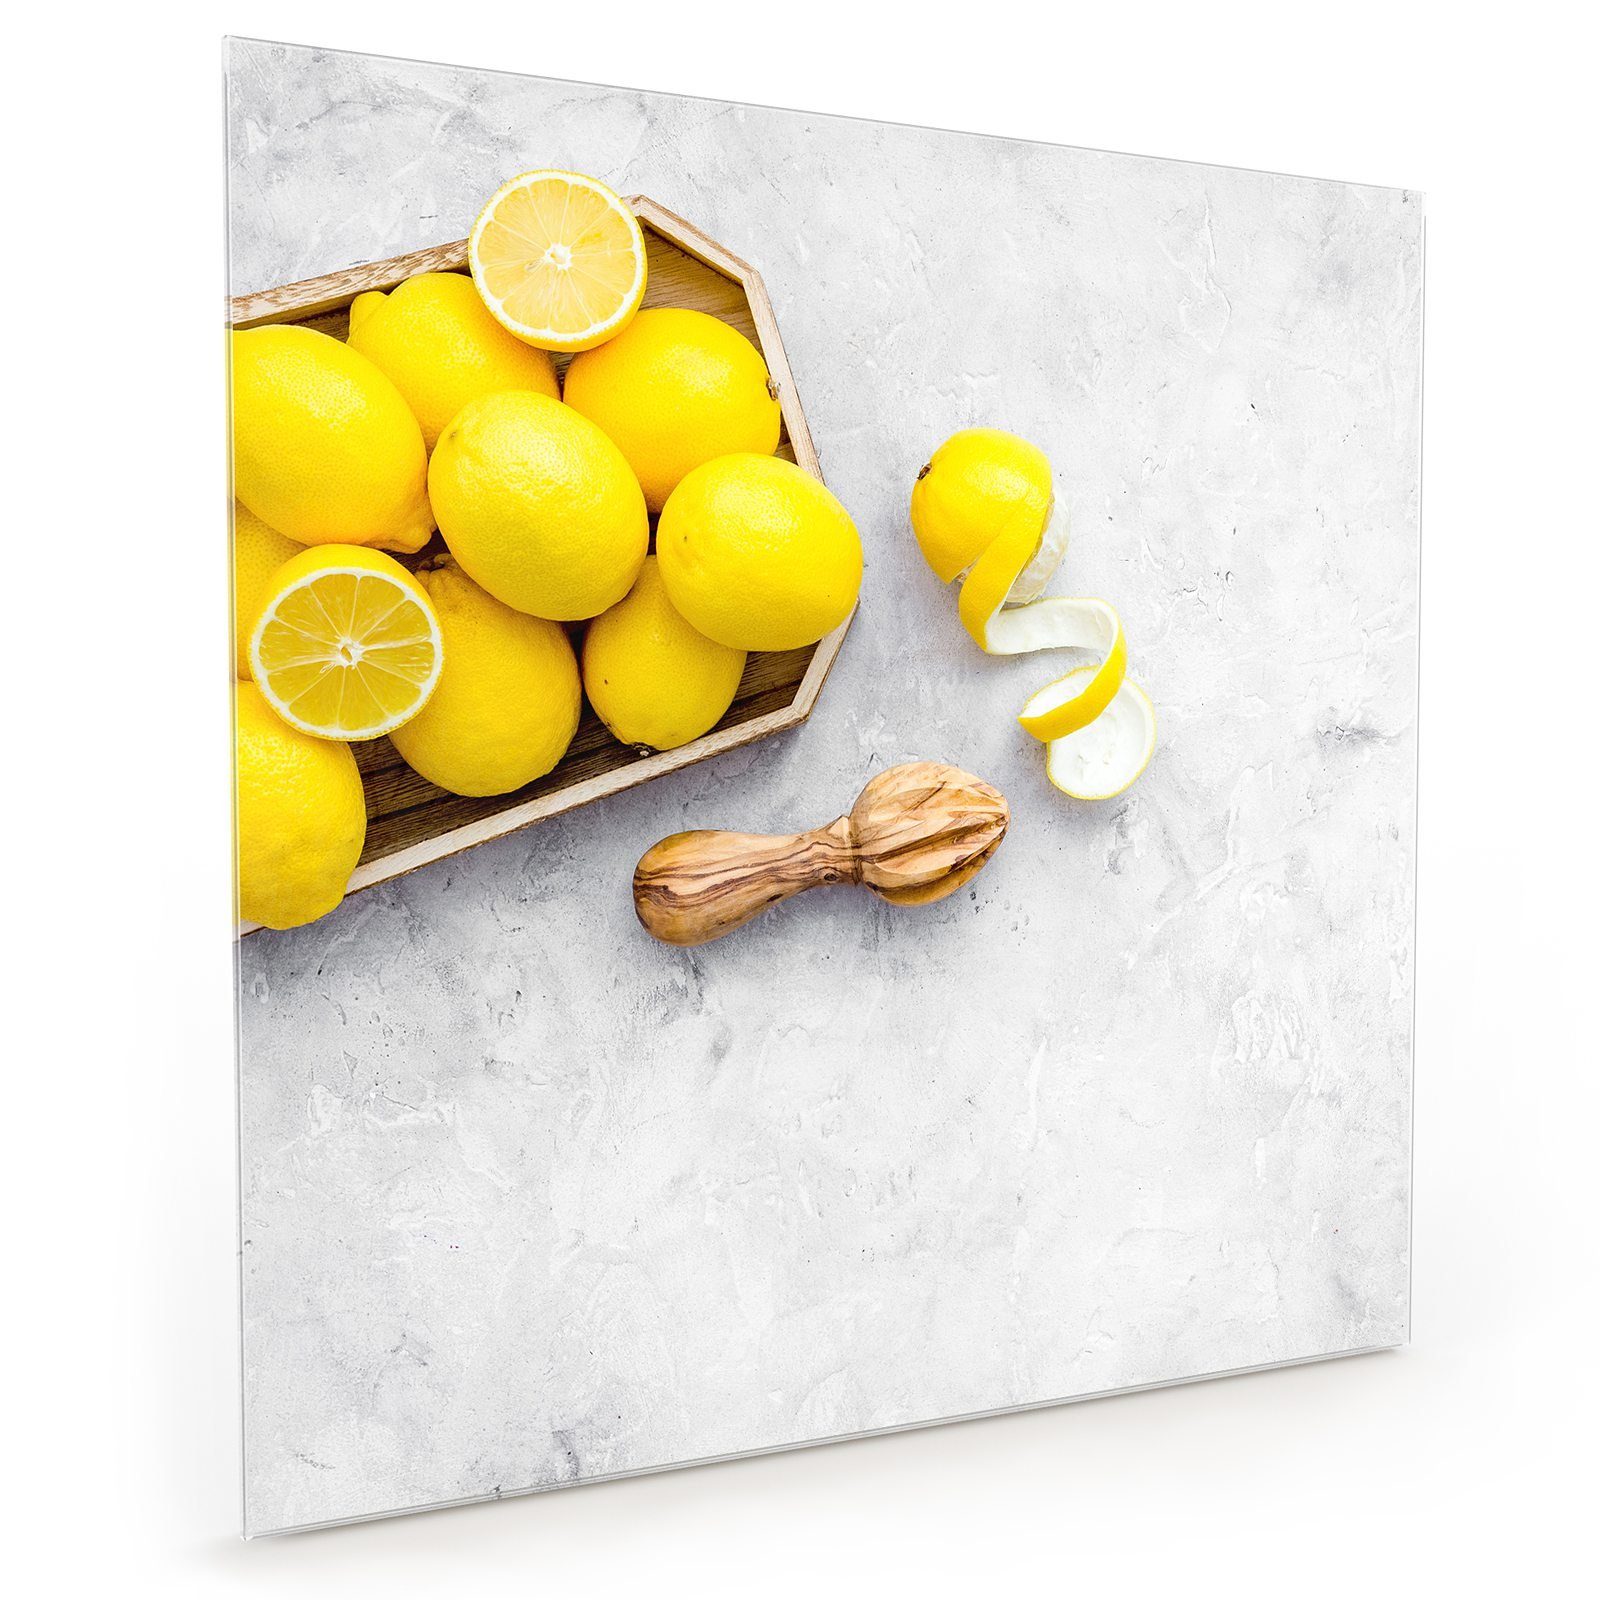 Primedeco Küchenrückwand Küchenrückwand Spritzschutz Glas mit Motiv Zitronen in Schale